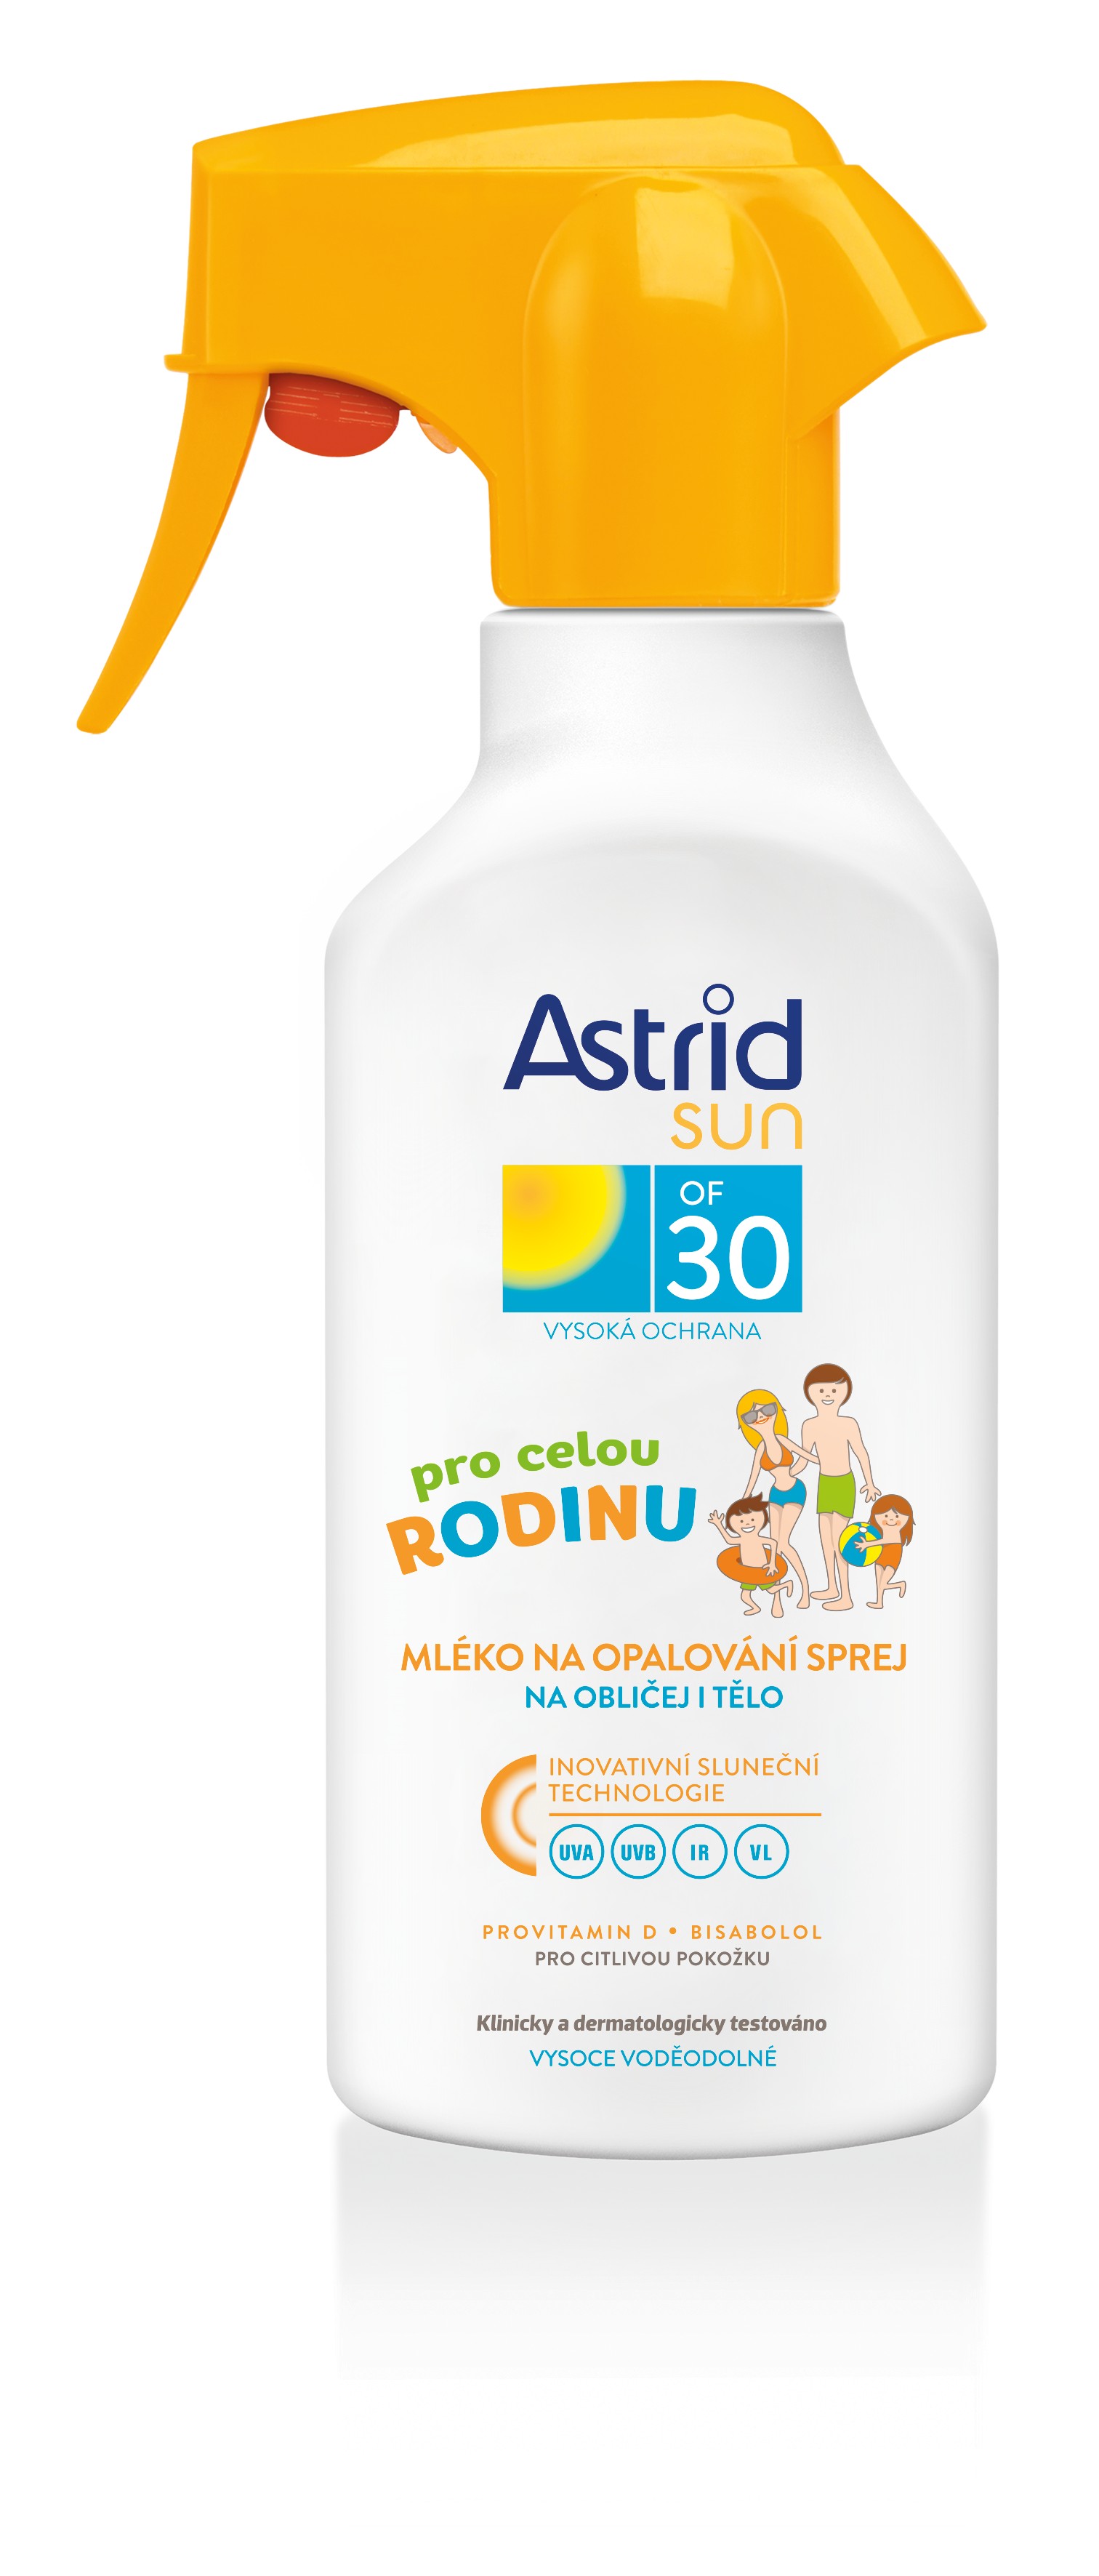 Astrid Rodinné mlieko na opaľovanie v spreji pre citlivú pokožku OF 30 Sun 270 ml